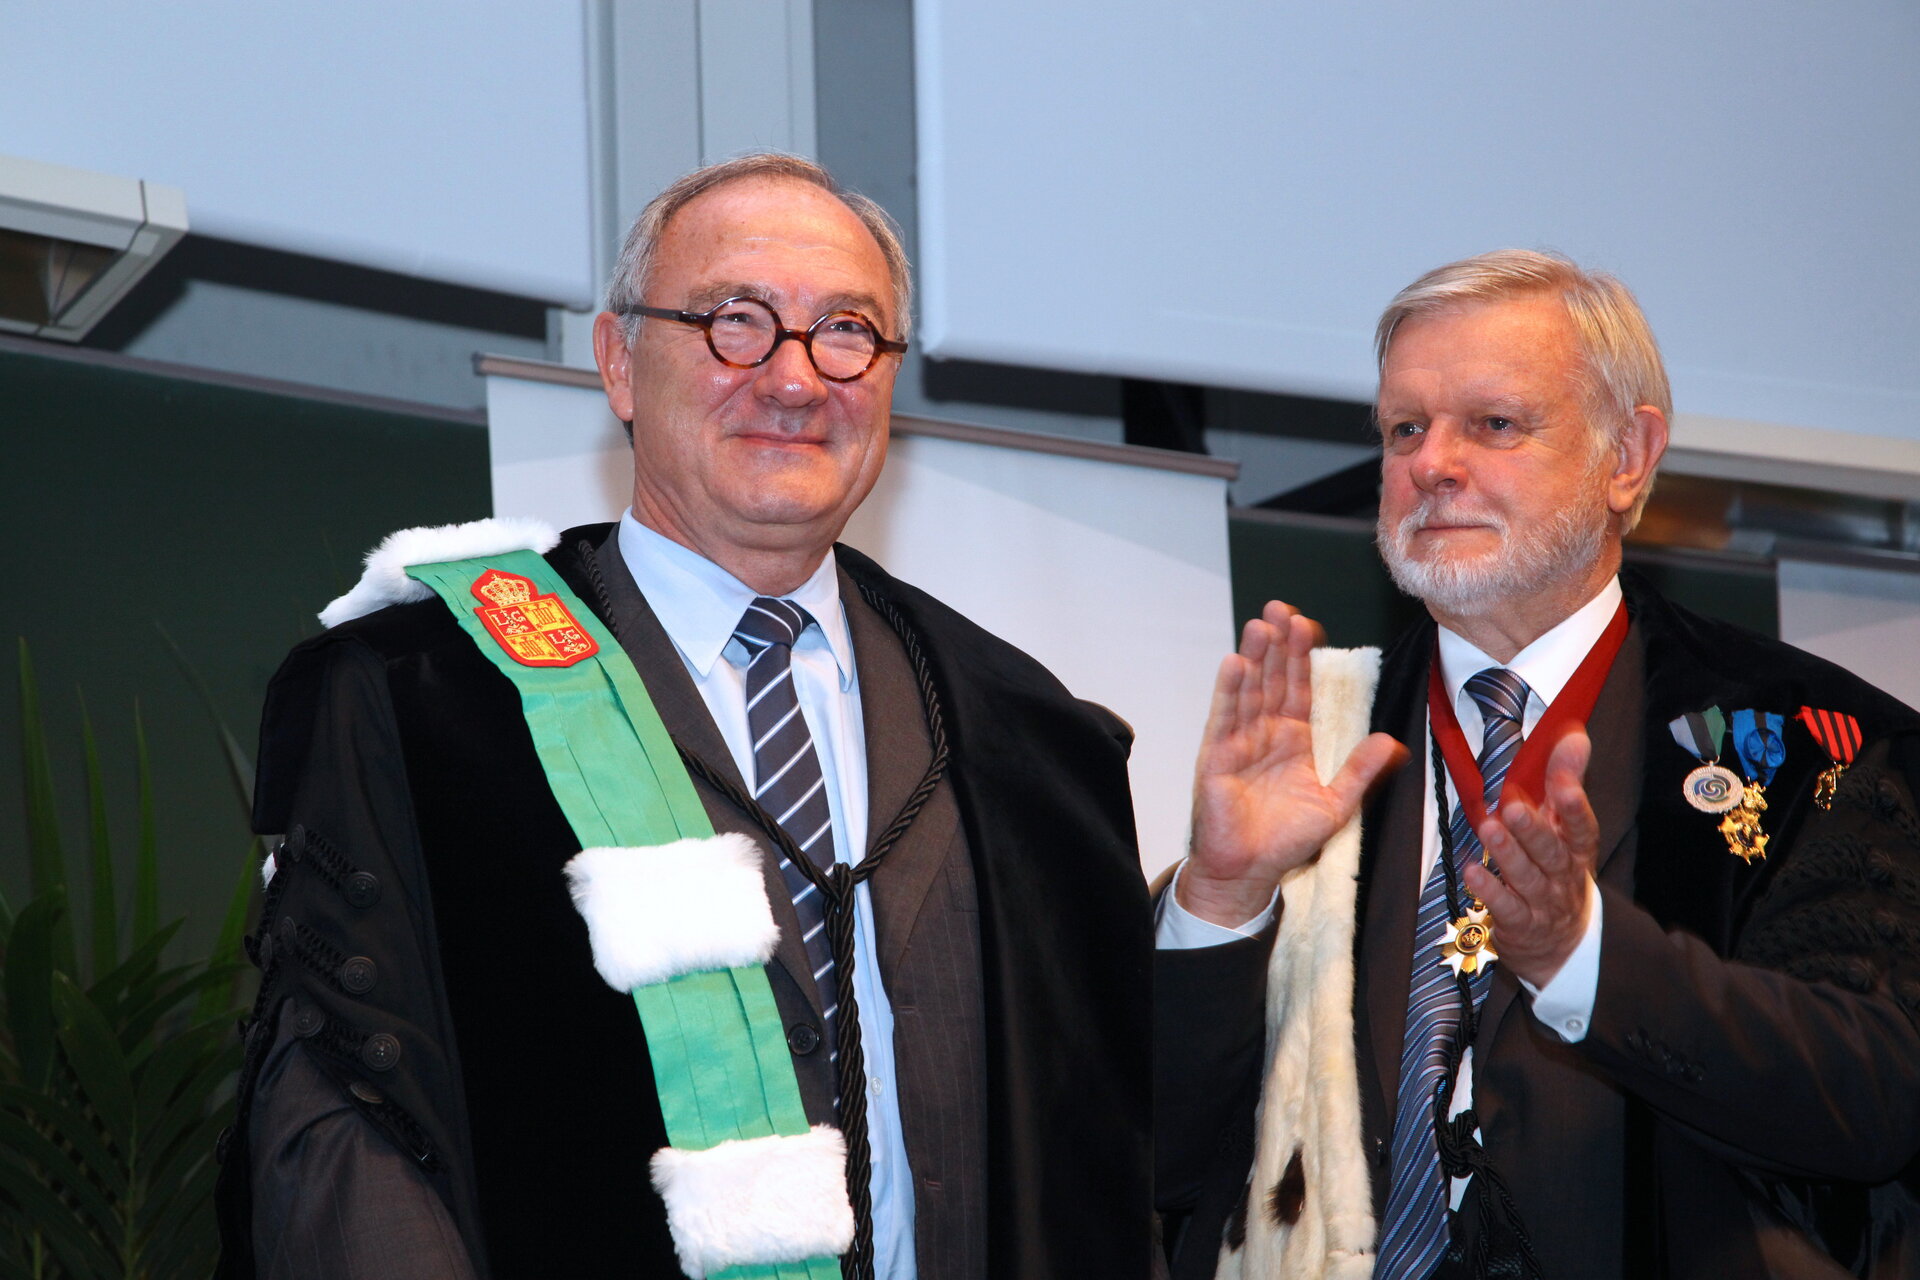 Jean-Jacques Dordain, fait docteur honoris causa de l’Université de Liège par son recteur Bernard Rentier.